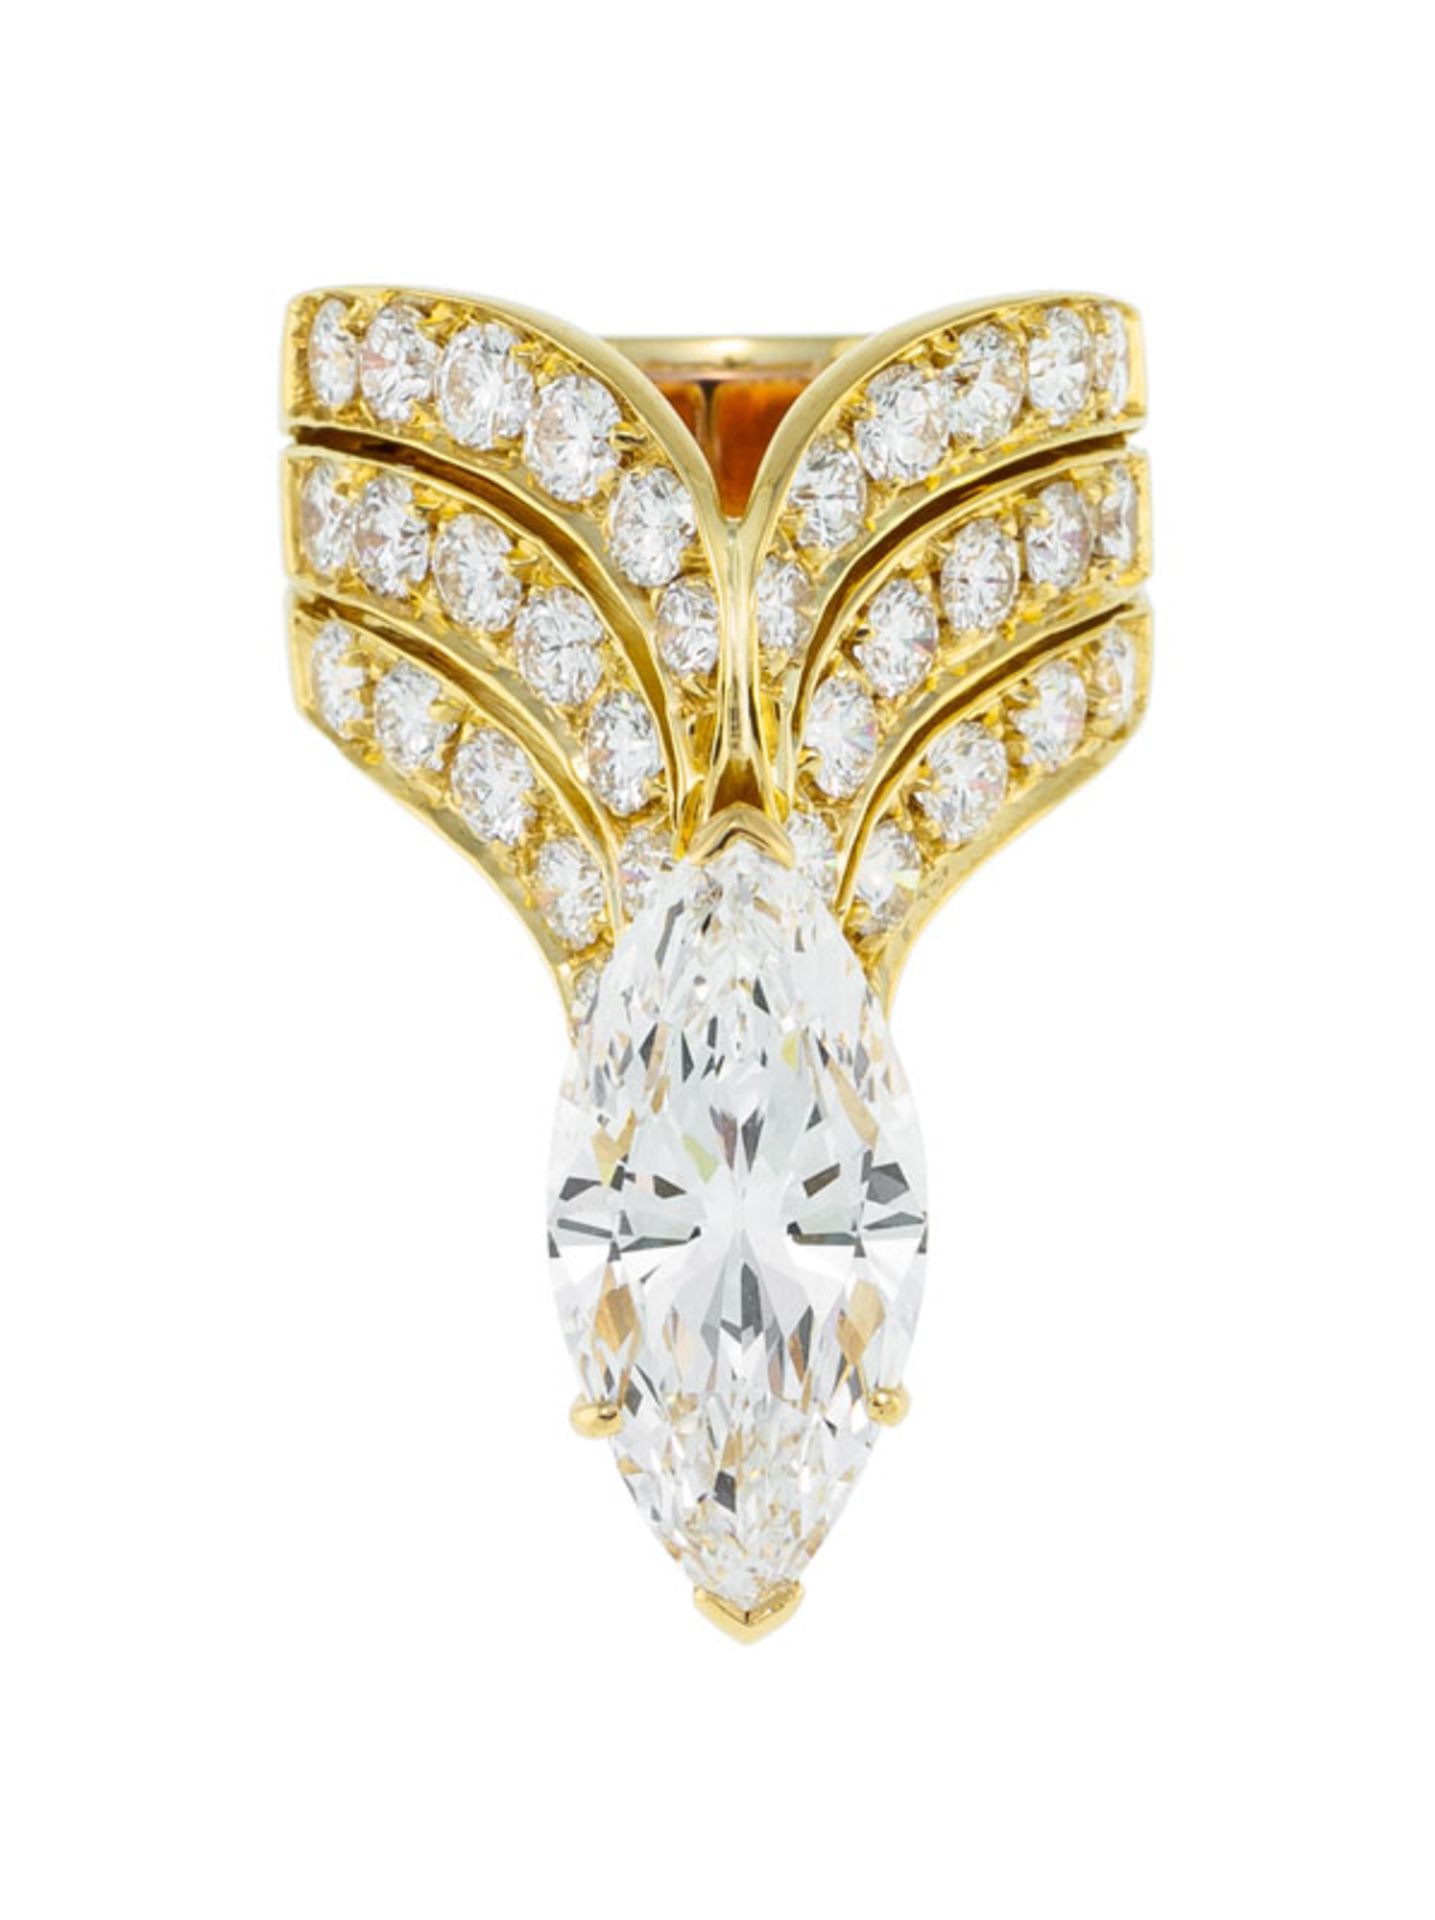 Bague or 750 à décor d'ailes stylisées serties de diamants se rejoingnant sous un diamants taille ma - Image 3 of 8